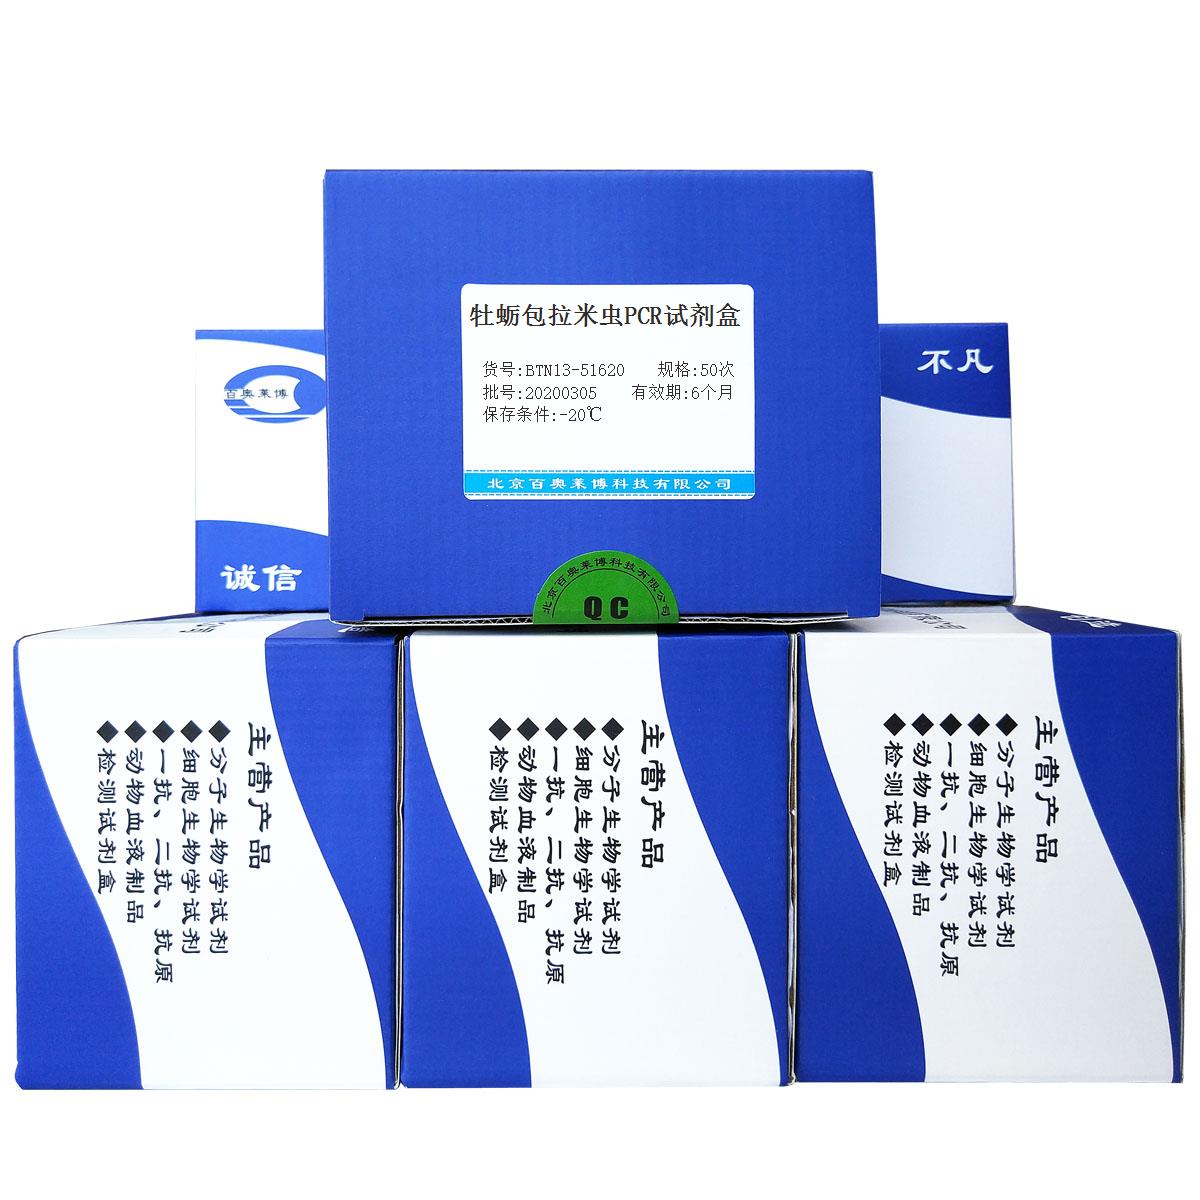 牡蛎包拉米虫PCR试剂盒优惠促销